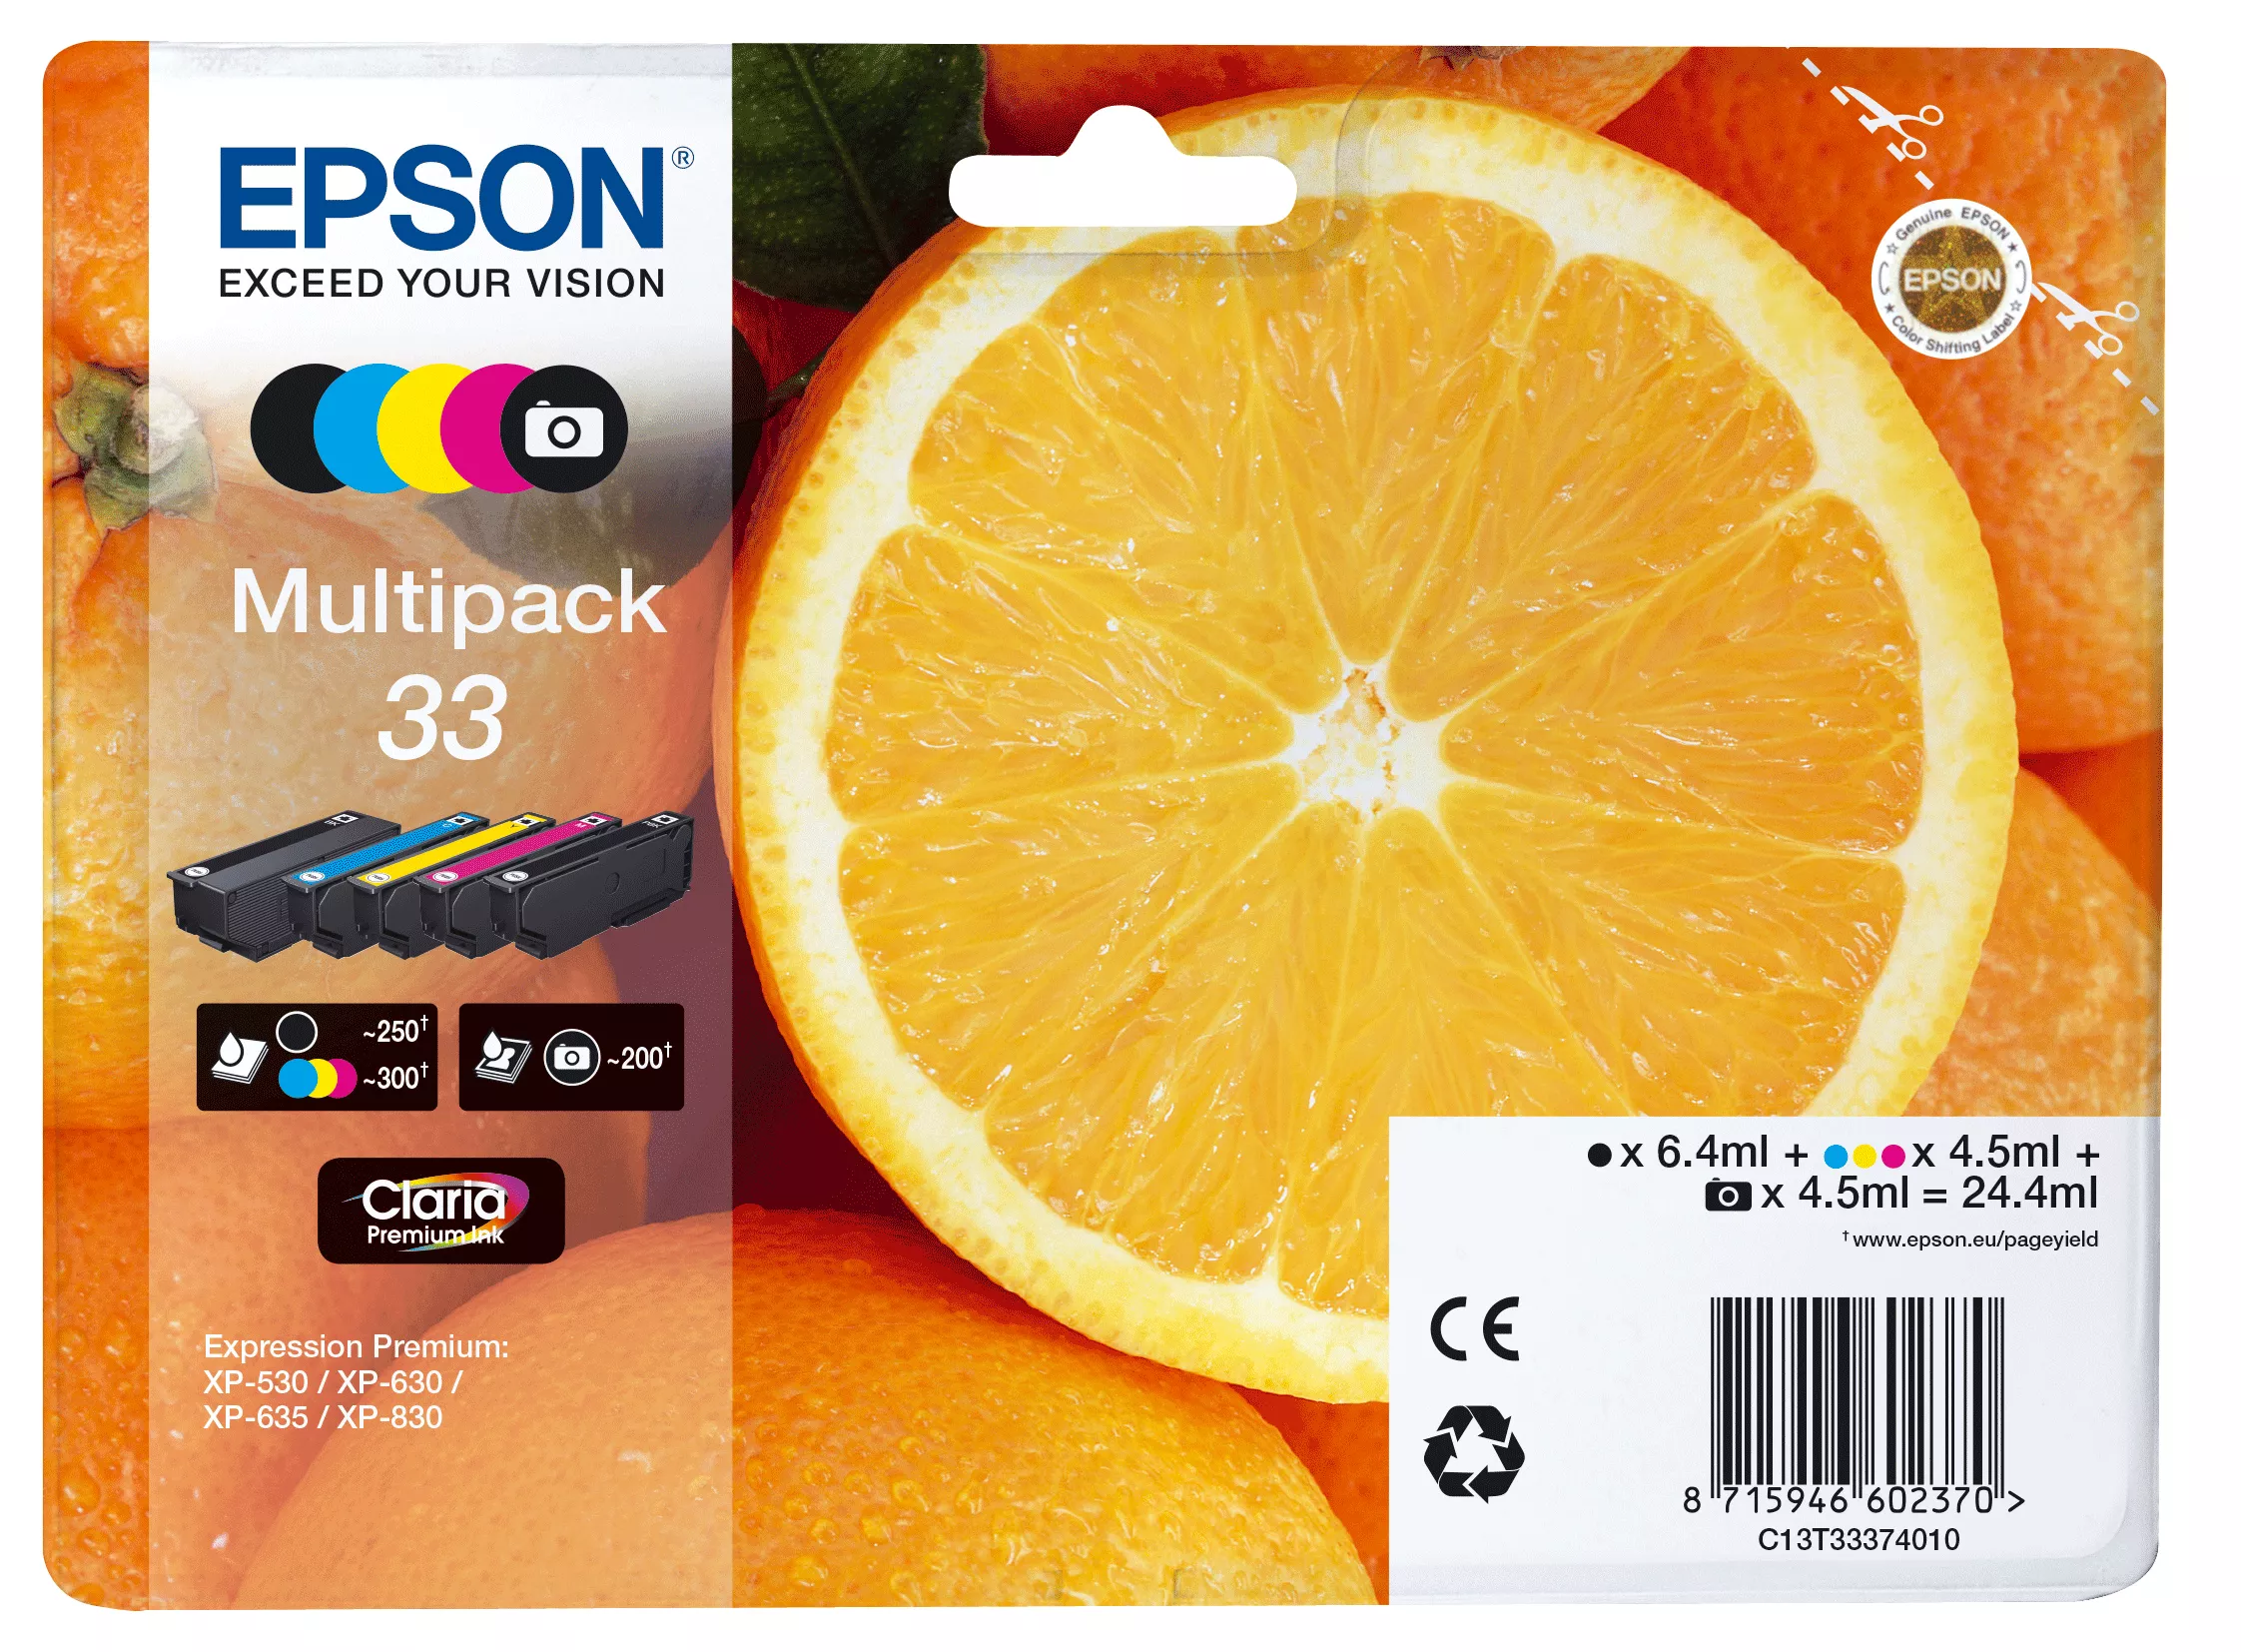 Achat EPSON Multipack Oranges alarmé - Encre Claria Premium et autres produits de la marque Epson